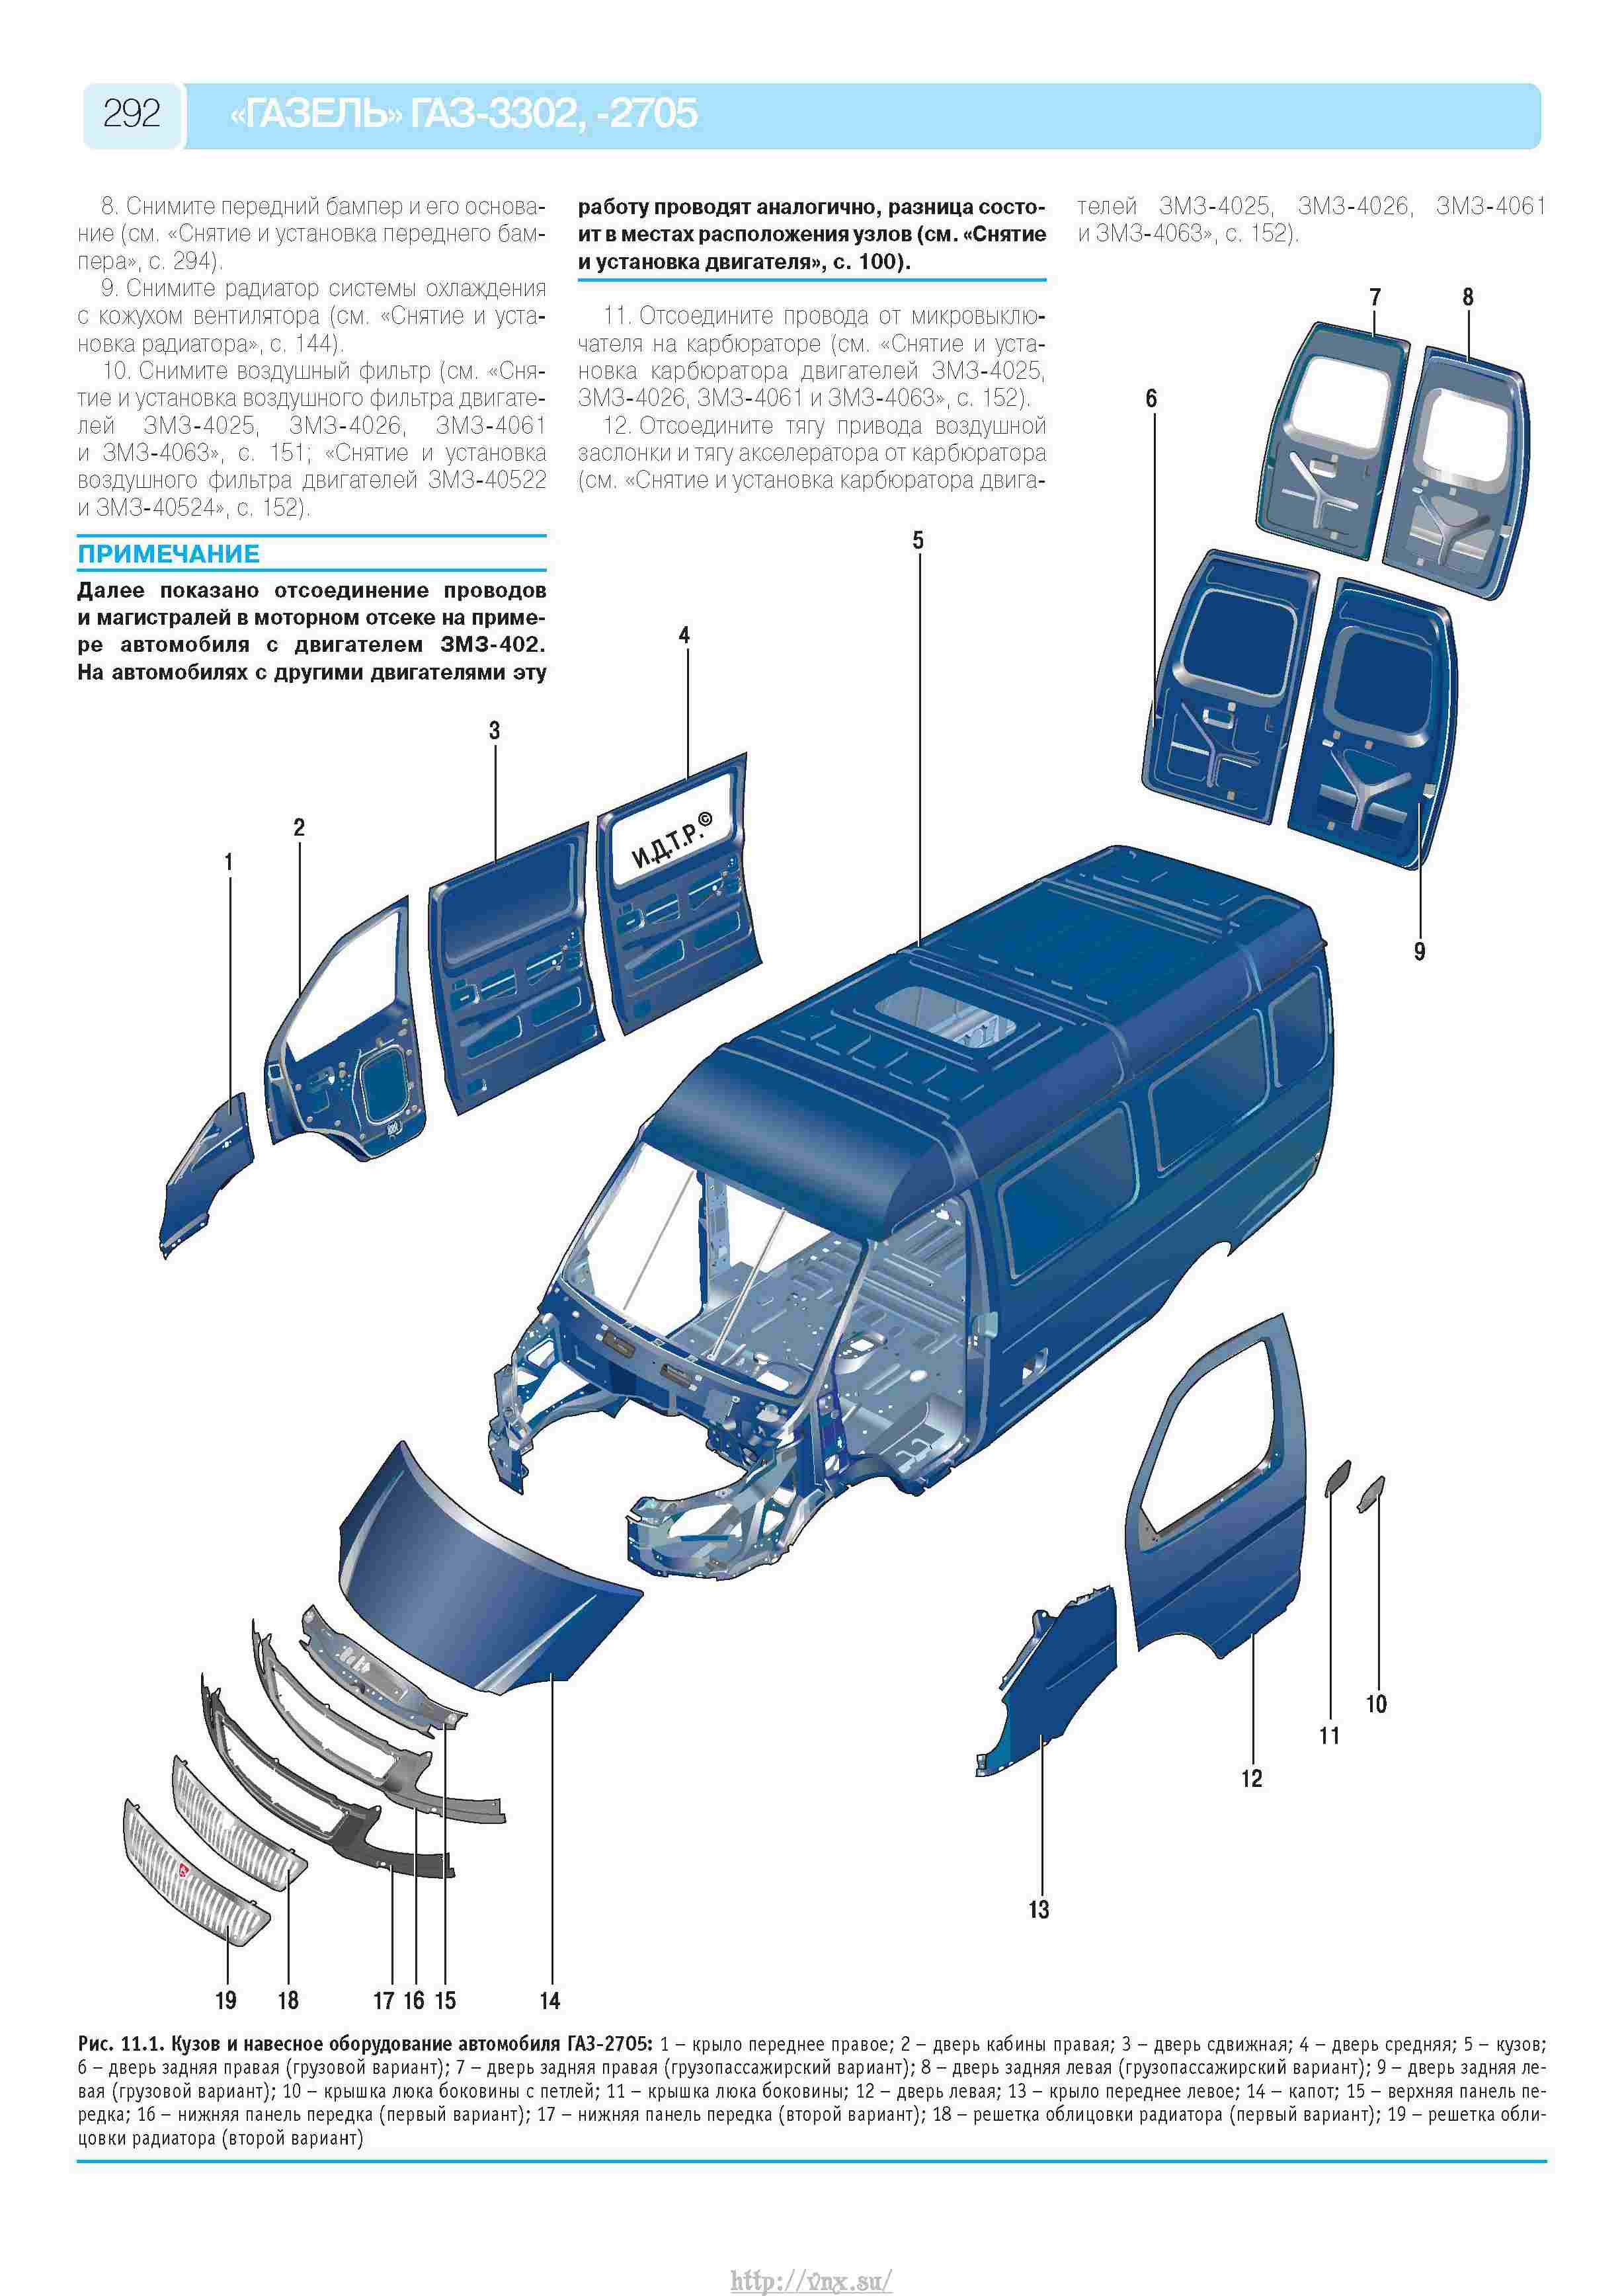 ГАЗ 2705 Газель : Кузов автомобиля У нас есть все фото и схемы необходимые для ремонта Полный мануал по ремонту и обслуживанию авто